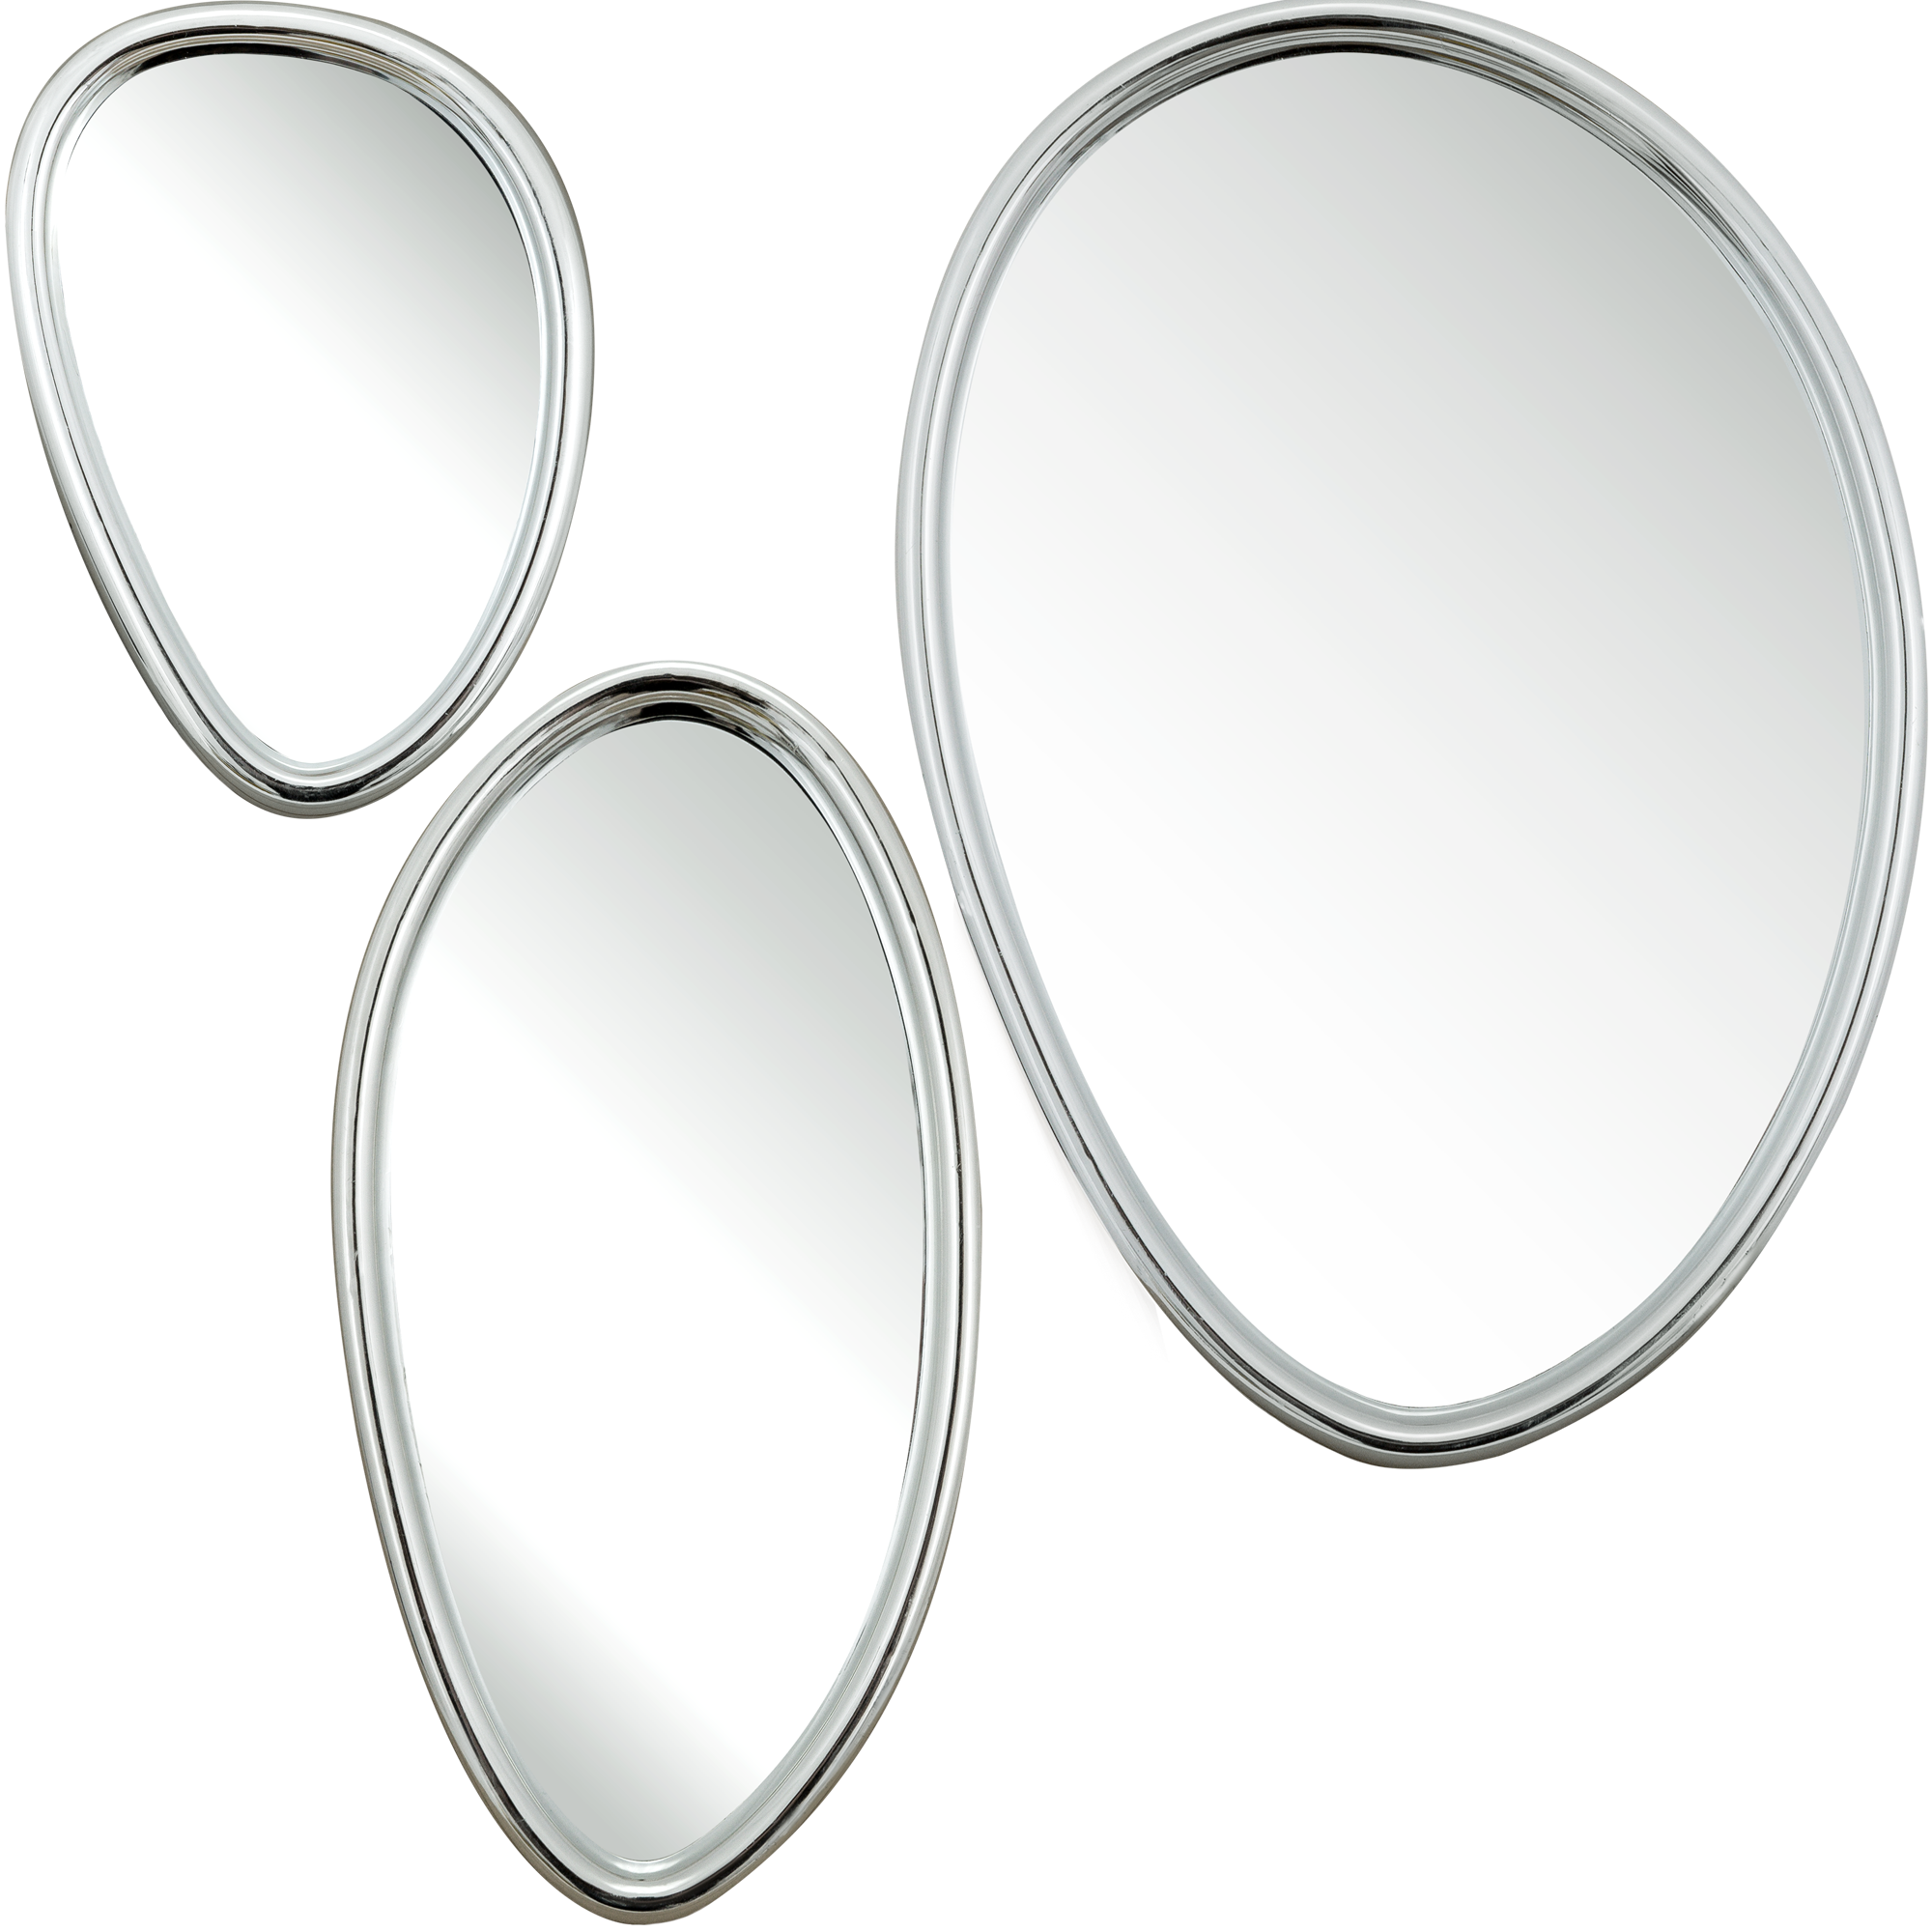 Зеркало мастер Рио набор №3 венге 28х28 в раме. Леруа Мерлен зеркала настенные. Зеркало декоративное Chic с крючками, овал, 51x71 см, цвет чёрный. Зеркало капля Леруа. Купить зеркало 3 в 1